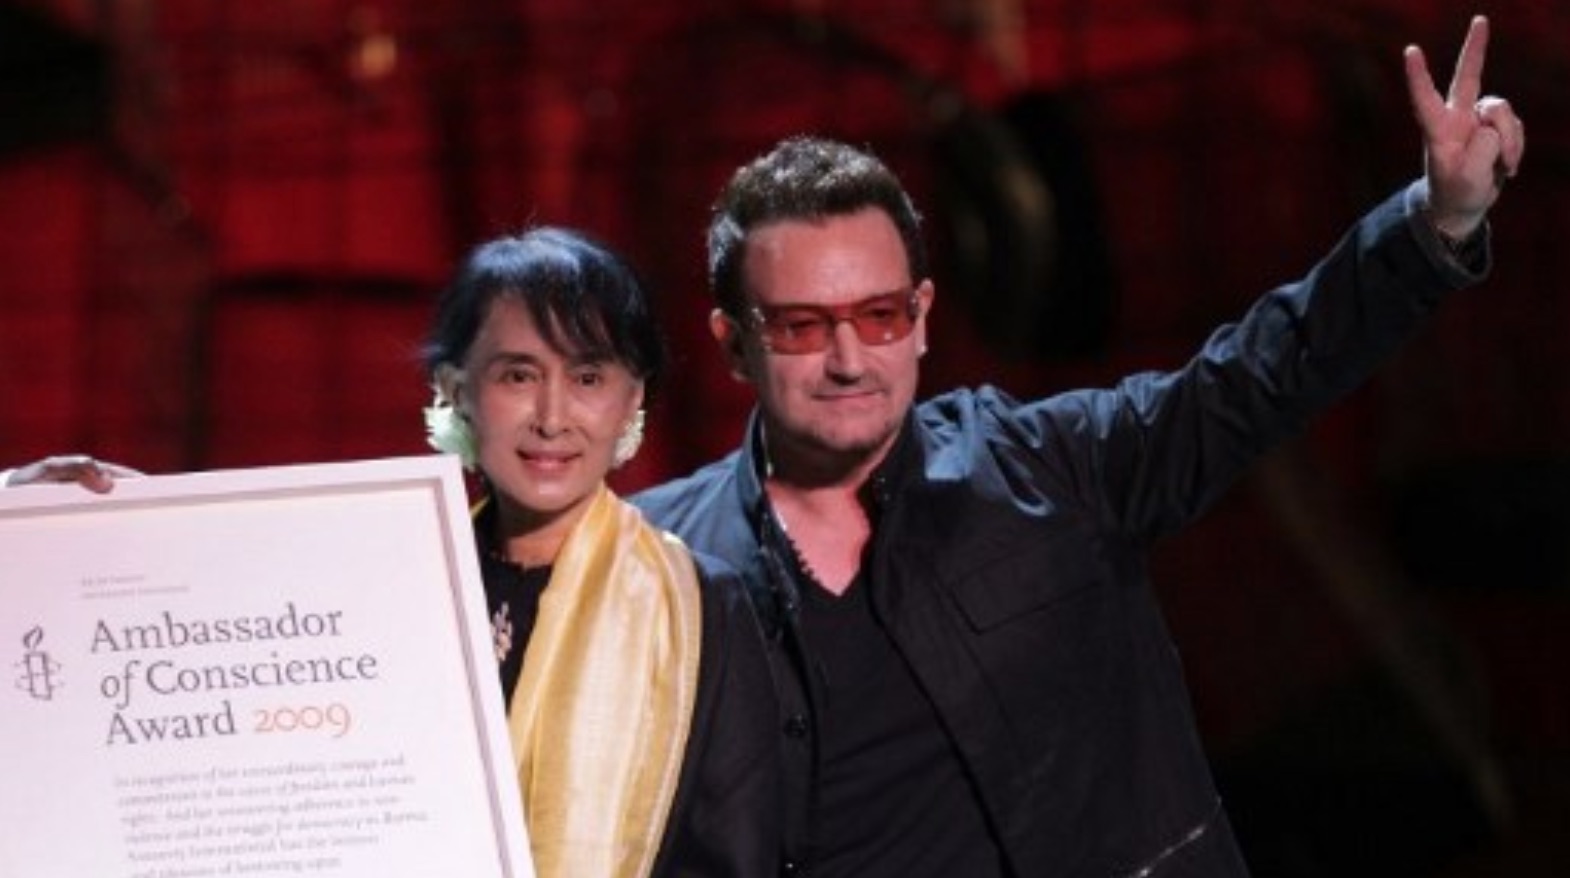 โบโน U2 เรียกร้องให้ซูจีเลิกเล่นการเมืองหากยังนิ่งเฉยเรื่องโรฮิงญา